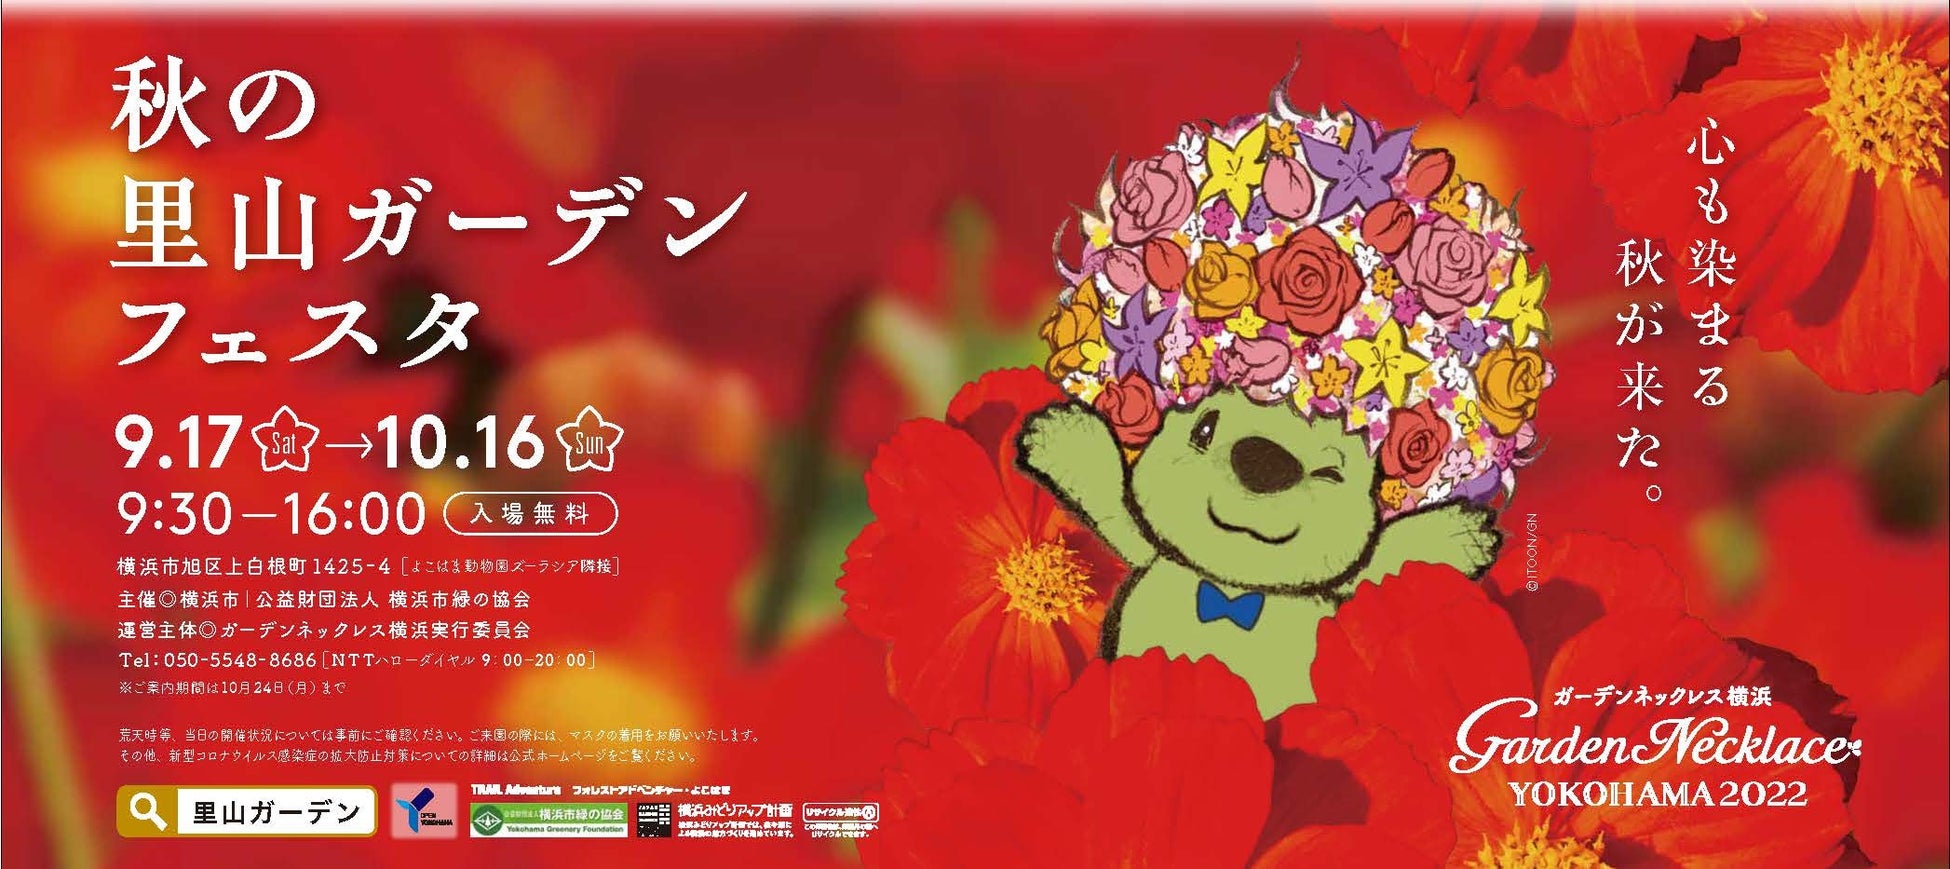 横浜で9.3万人が来場した大規模な花のイベント、ガーデンネックレス横浜2022「秋の里山ガーデンフェスタ」開催！のサブ画像1